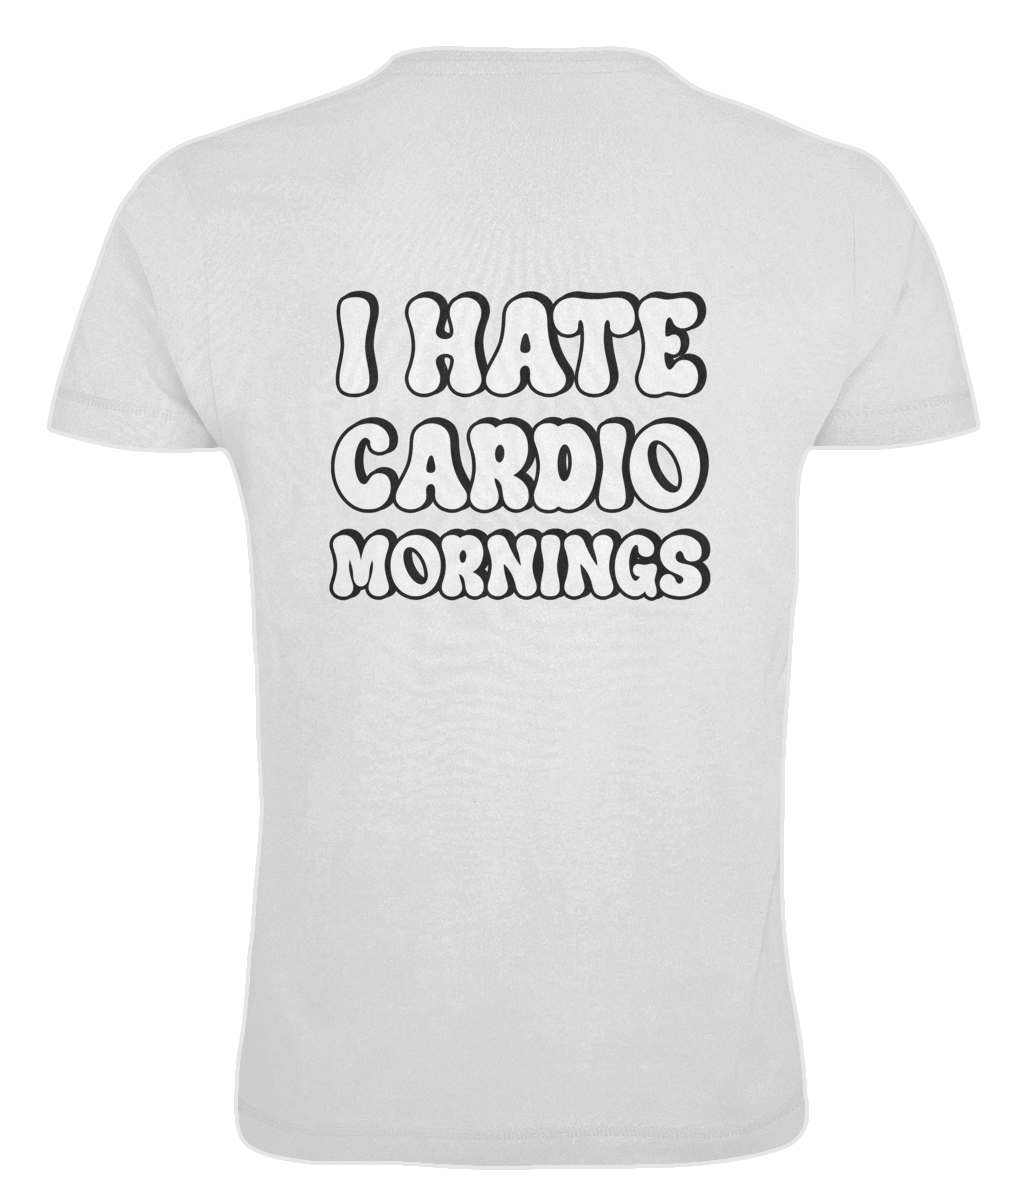 "Cardio mornings" - Oversized T-shirt